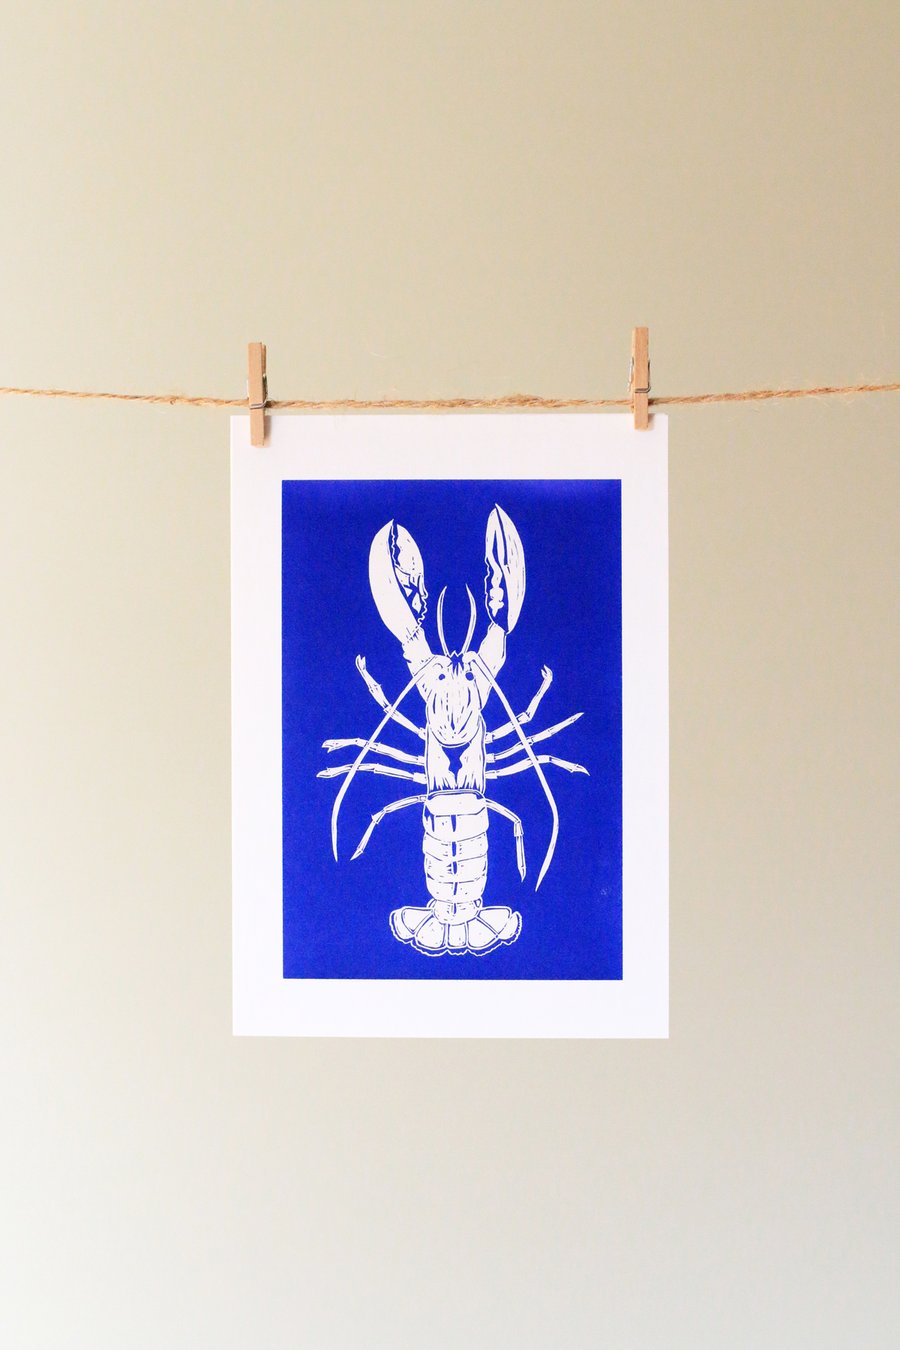 'Blue lobster' greetings card